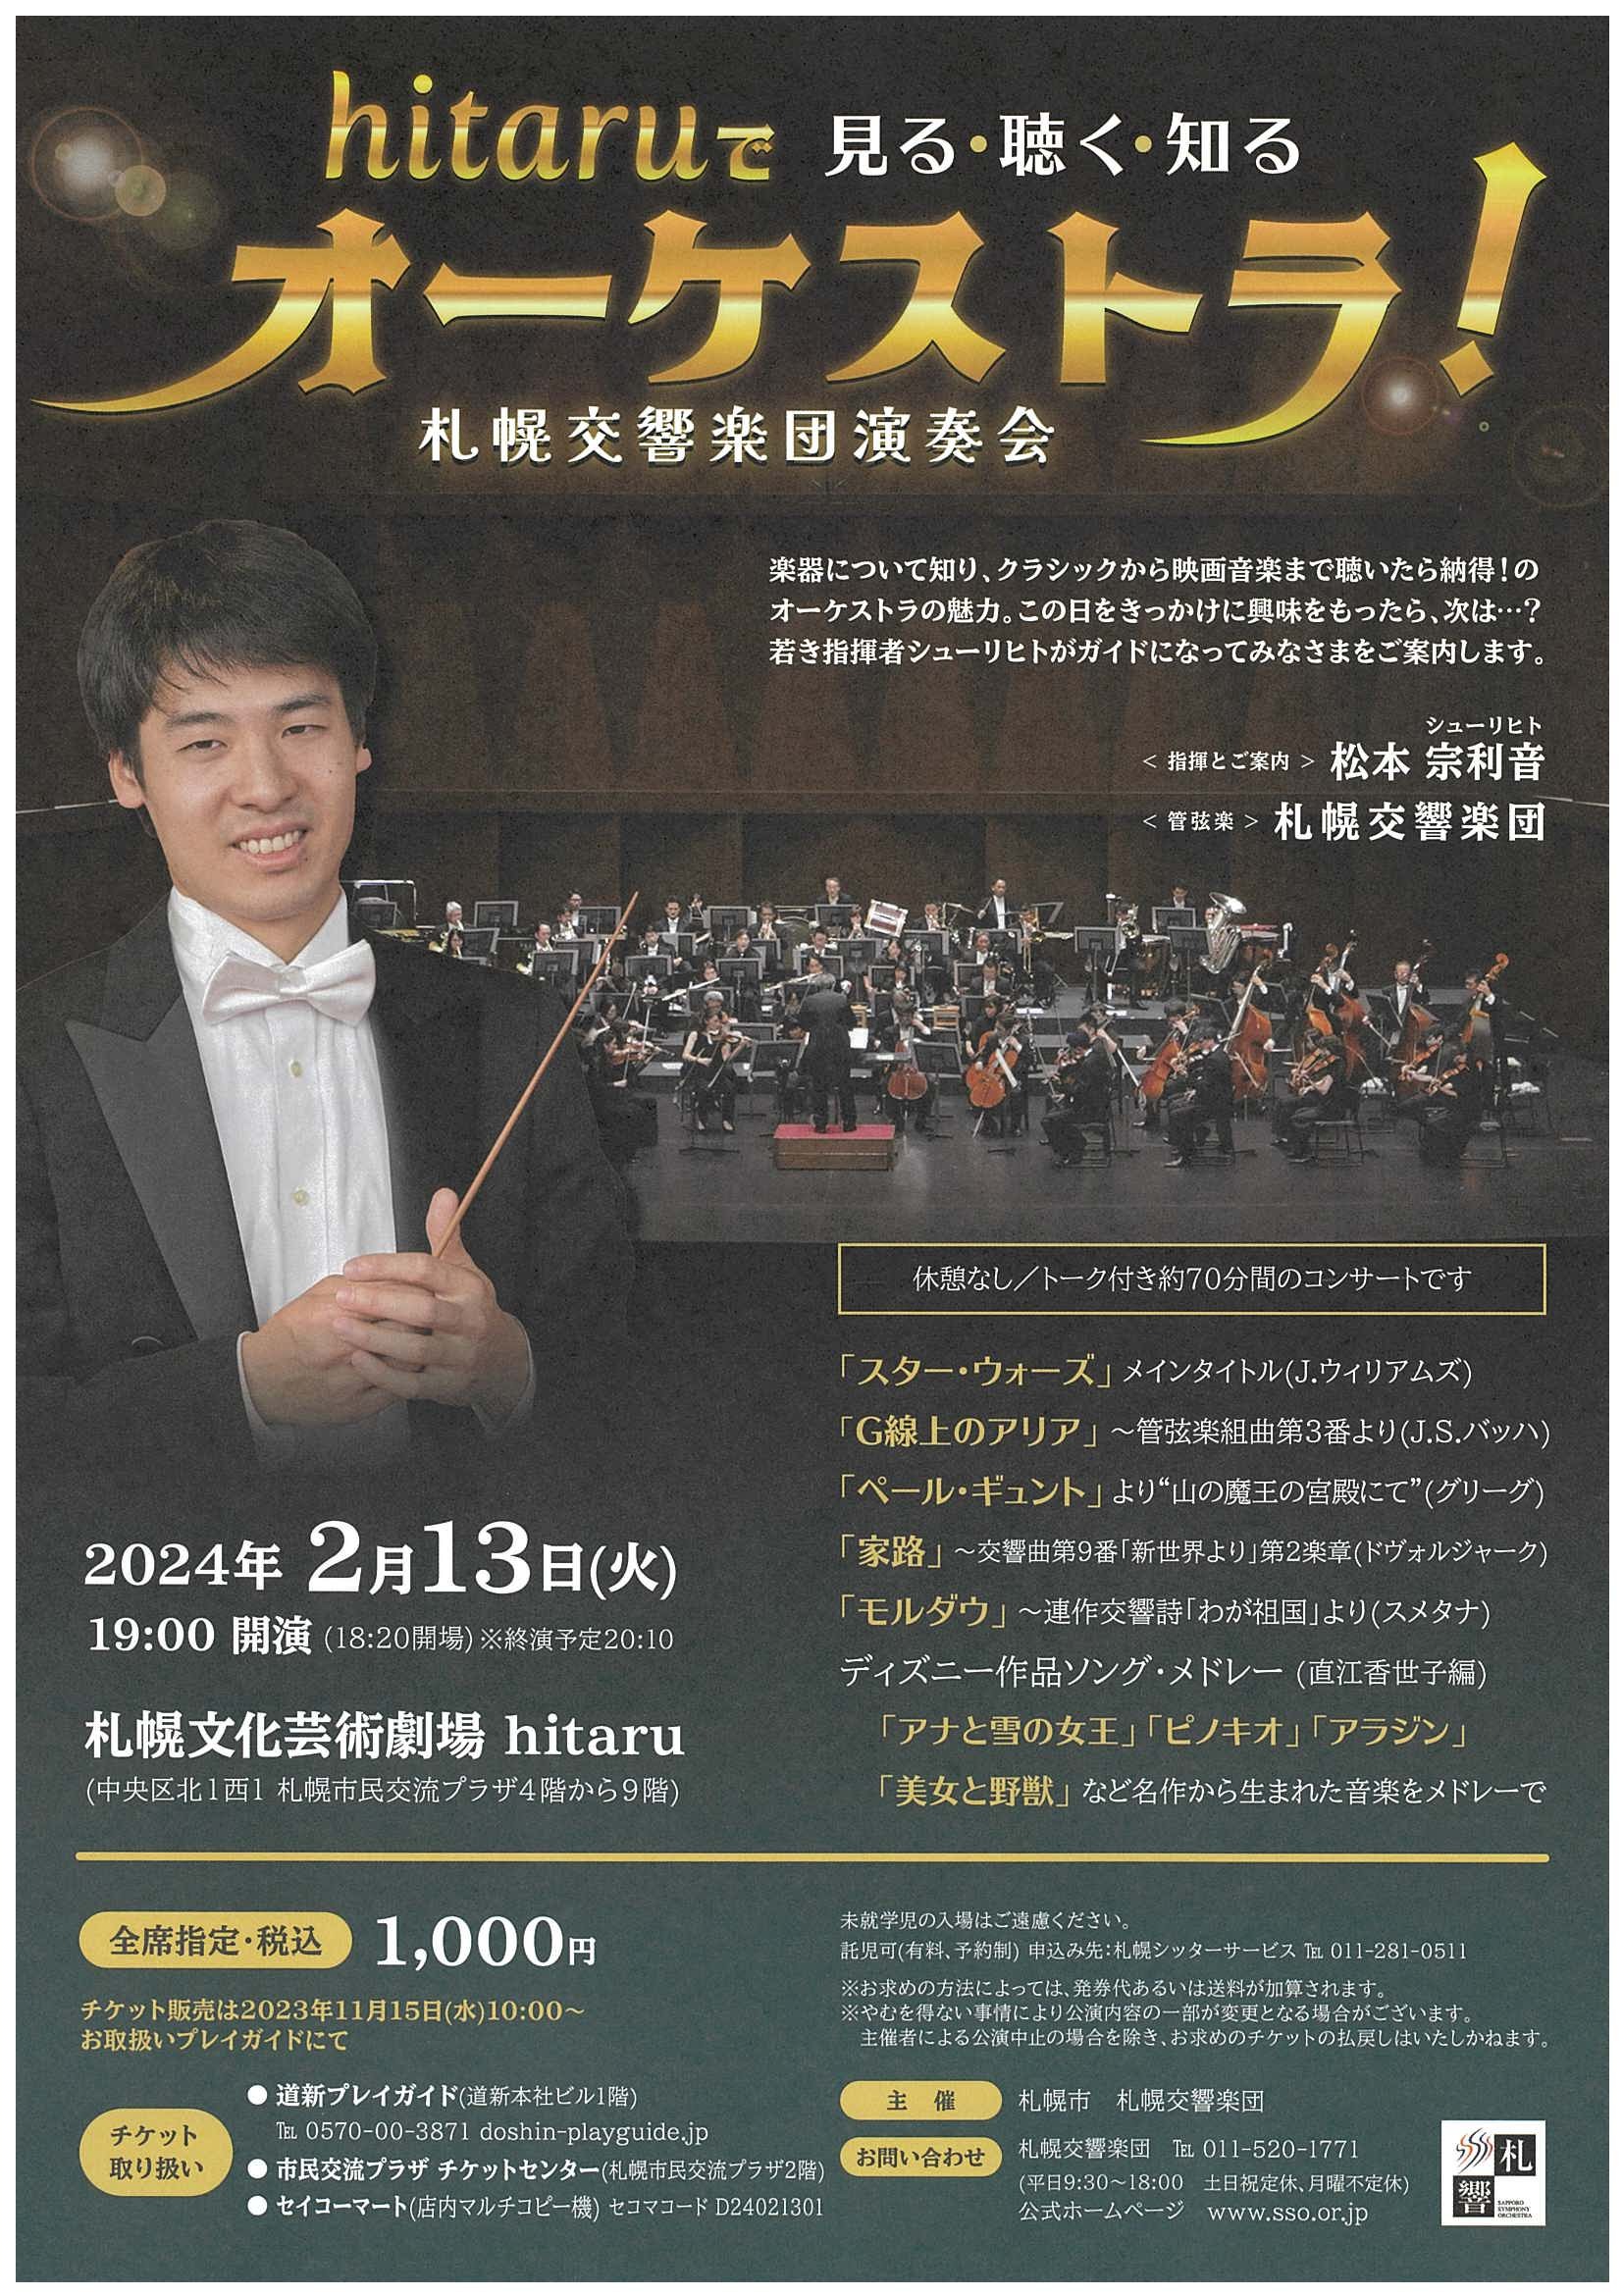 【2/13前売券売切】2月13日『hitaruで見る・聴く・知るオーケストラ』